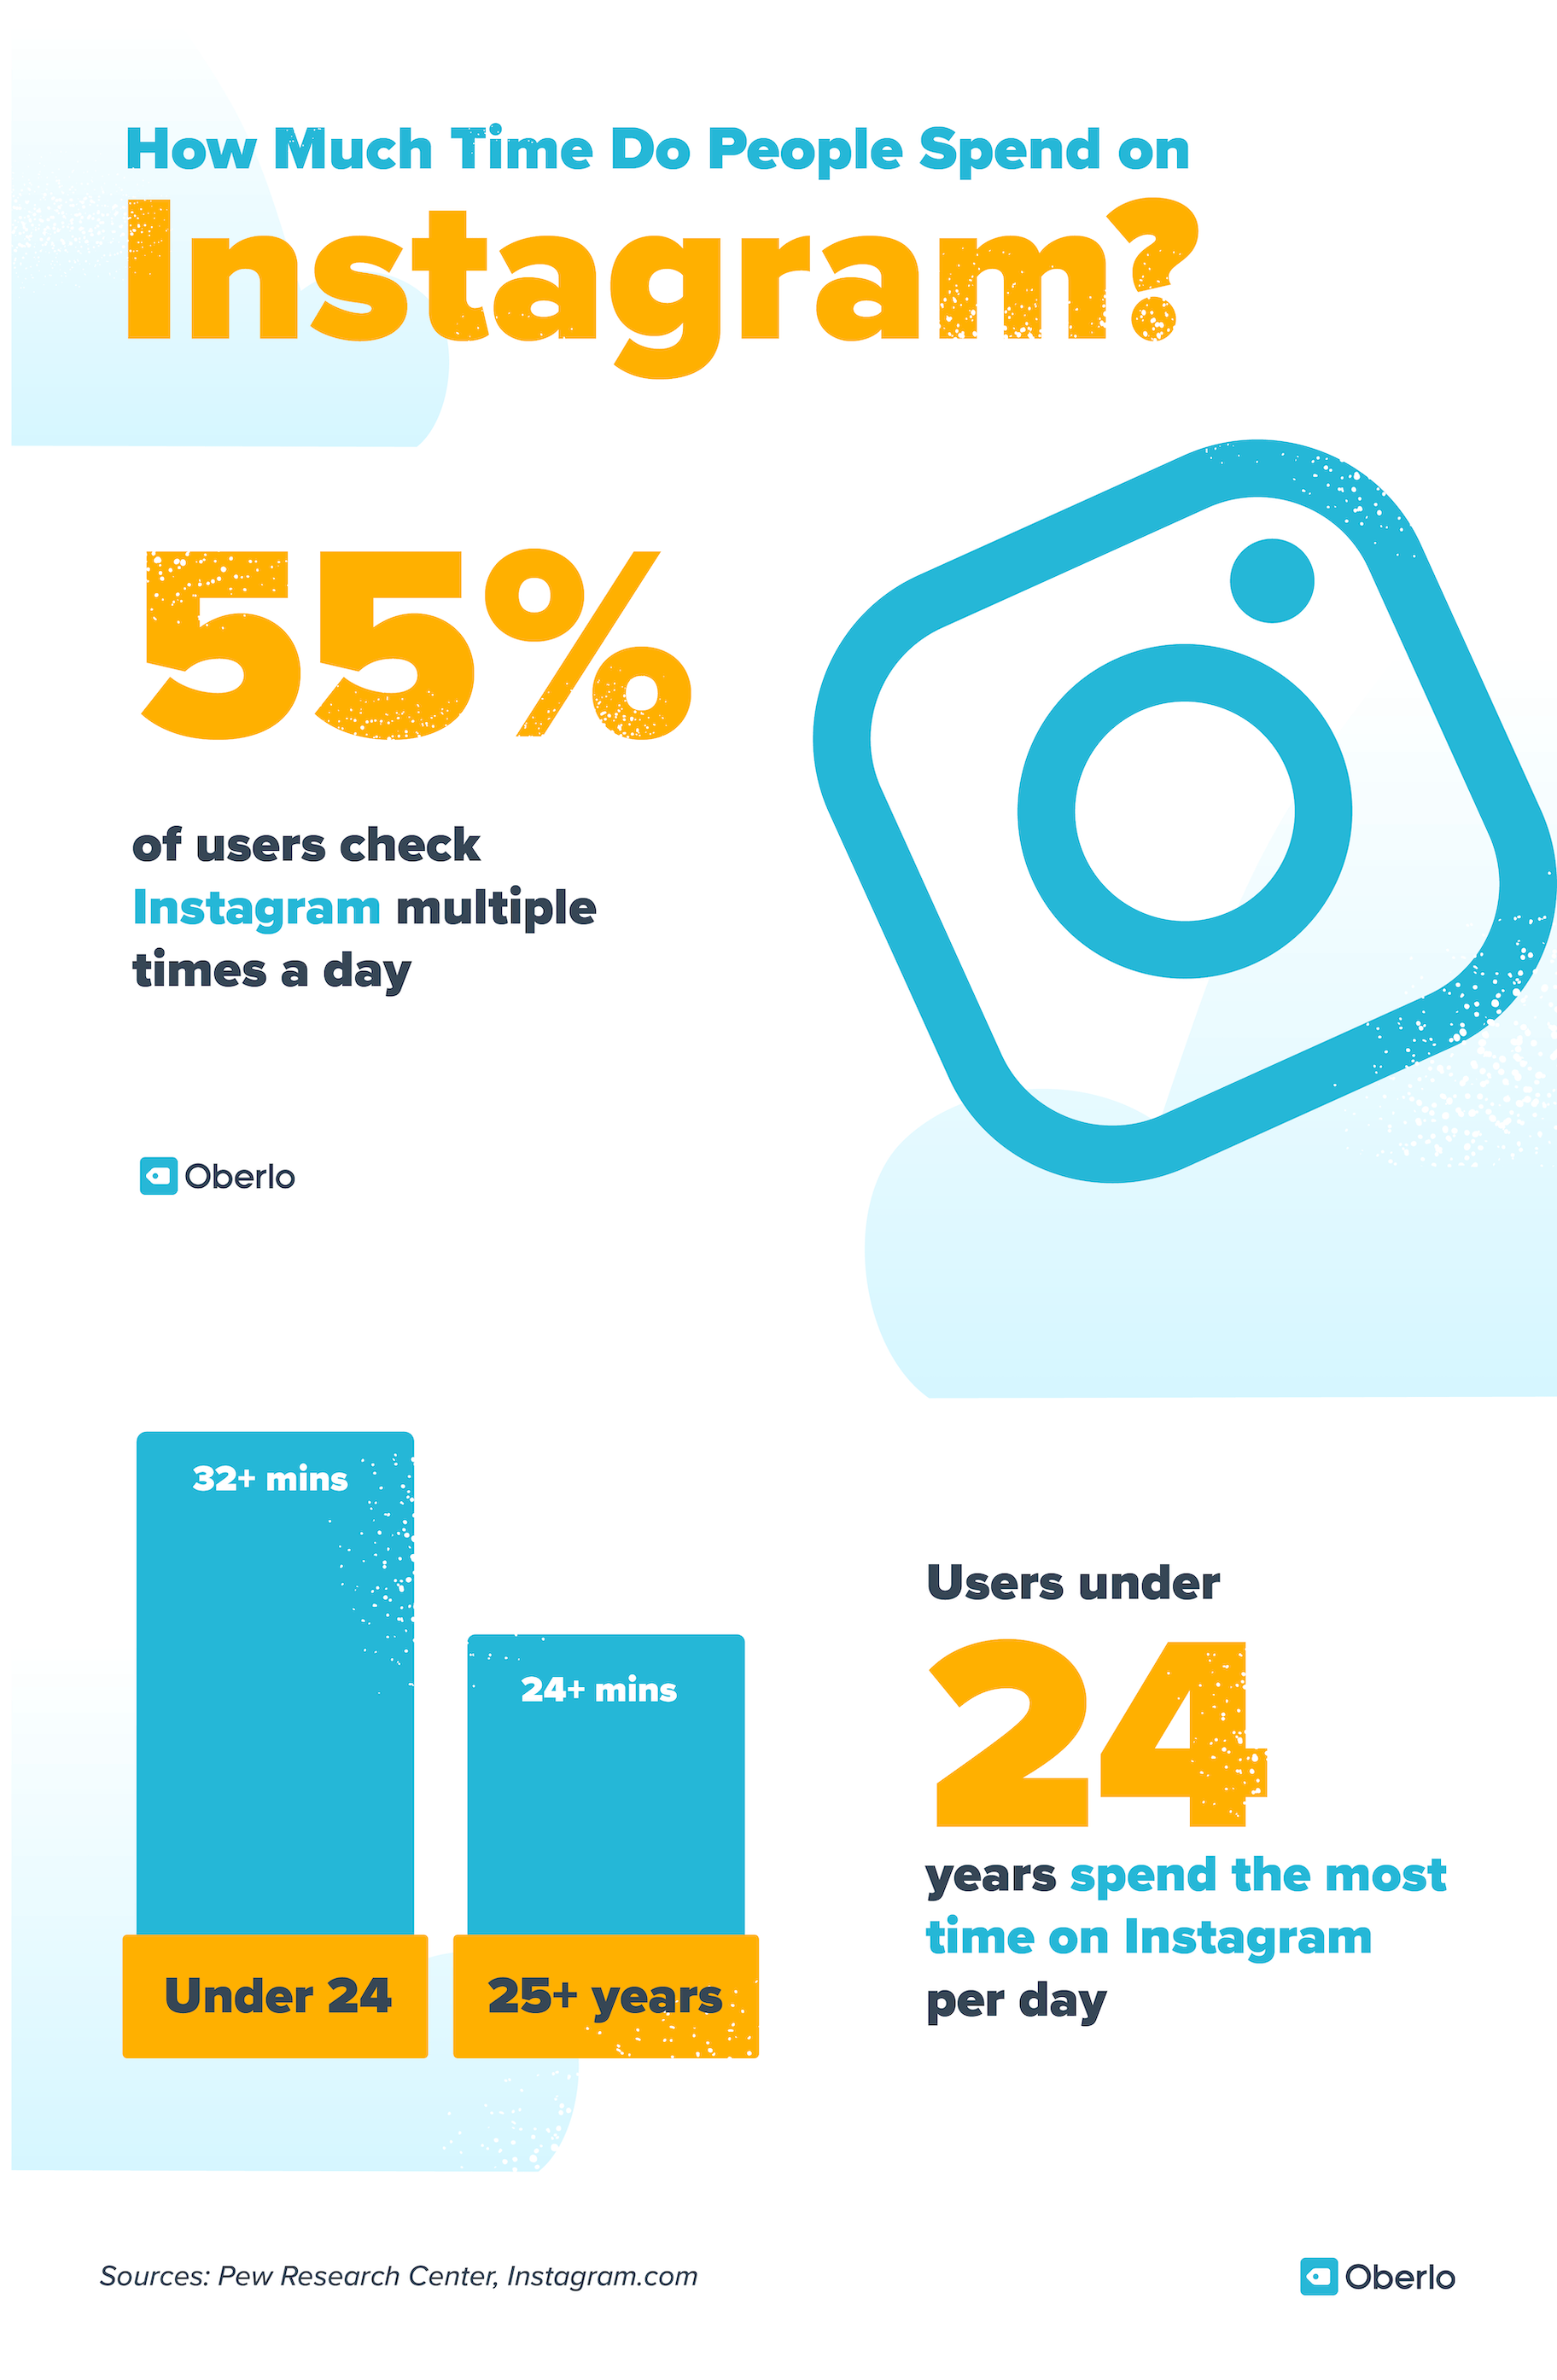 社交媒体营销数据:55%的instagram用户每天会多次查看它。24岁以下用户每天花在Instagram上的时间最多(超过32分钟)